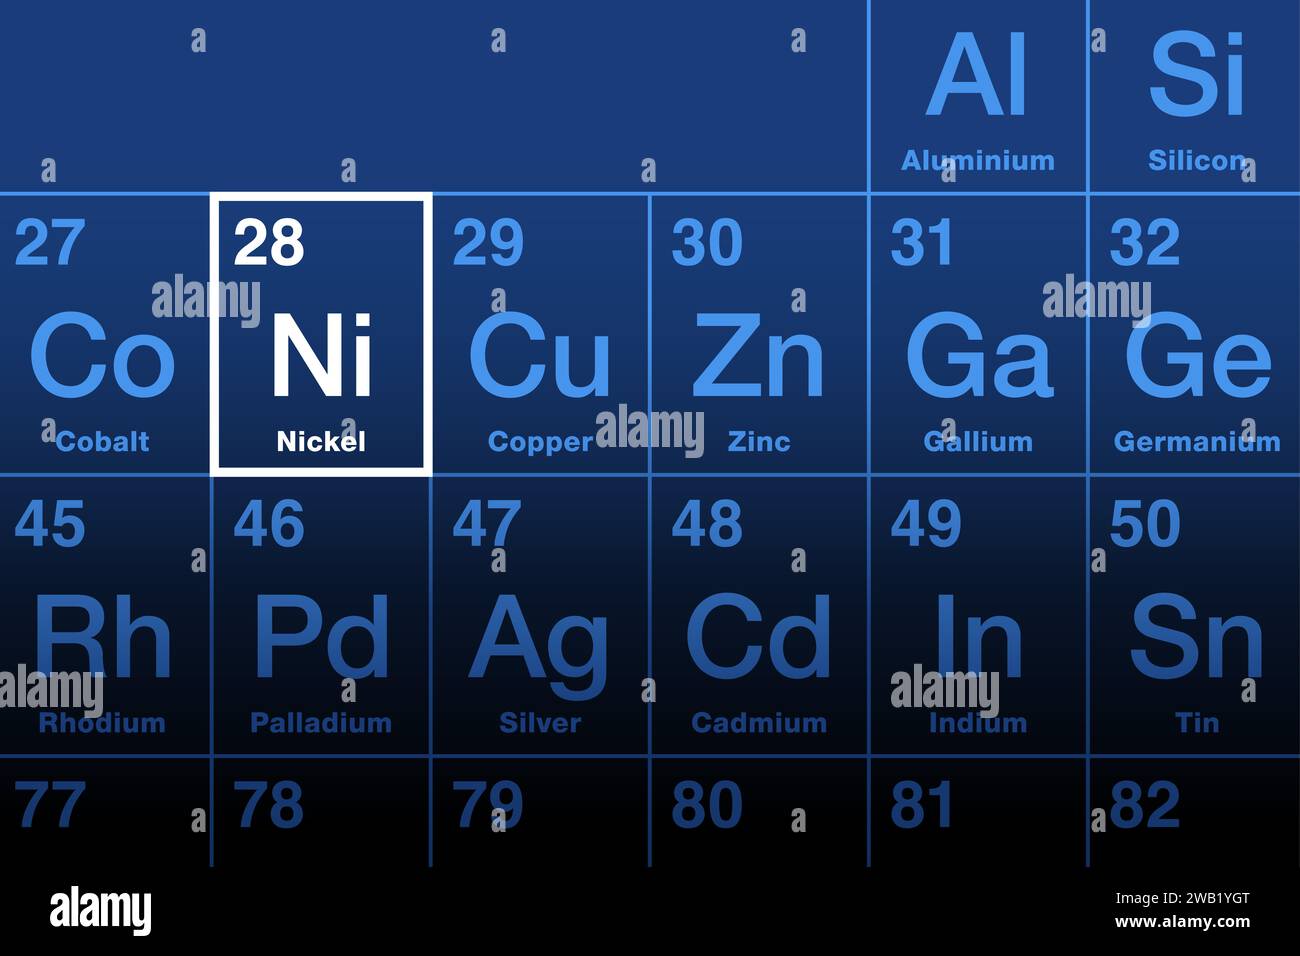 Elemento in nichel sulla tavola periodica. Metallo di transizione ferromagnetico, con il simbolo dell'elemento Ni e con il numero atomico 28. Foto Stock